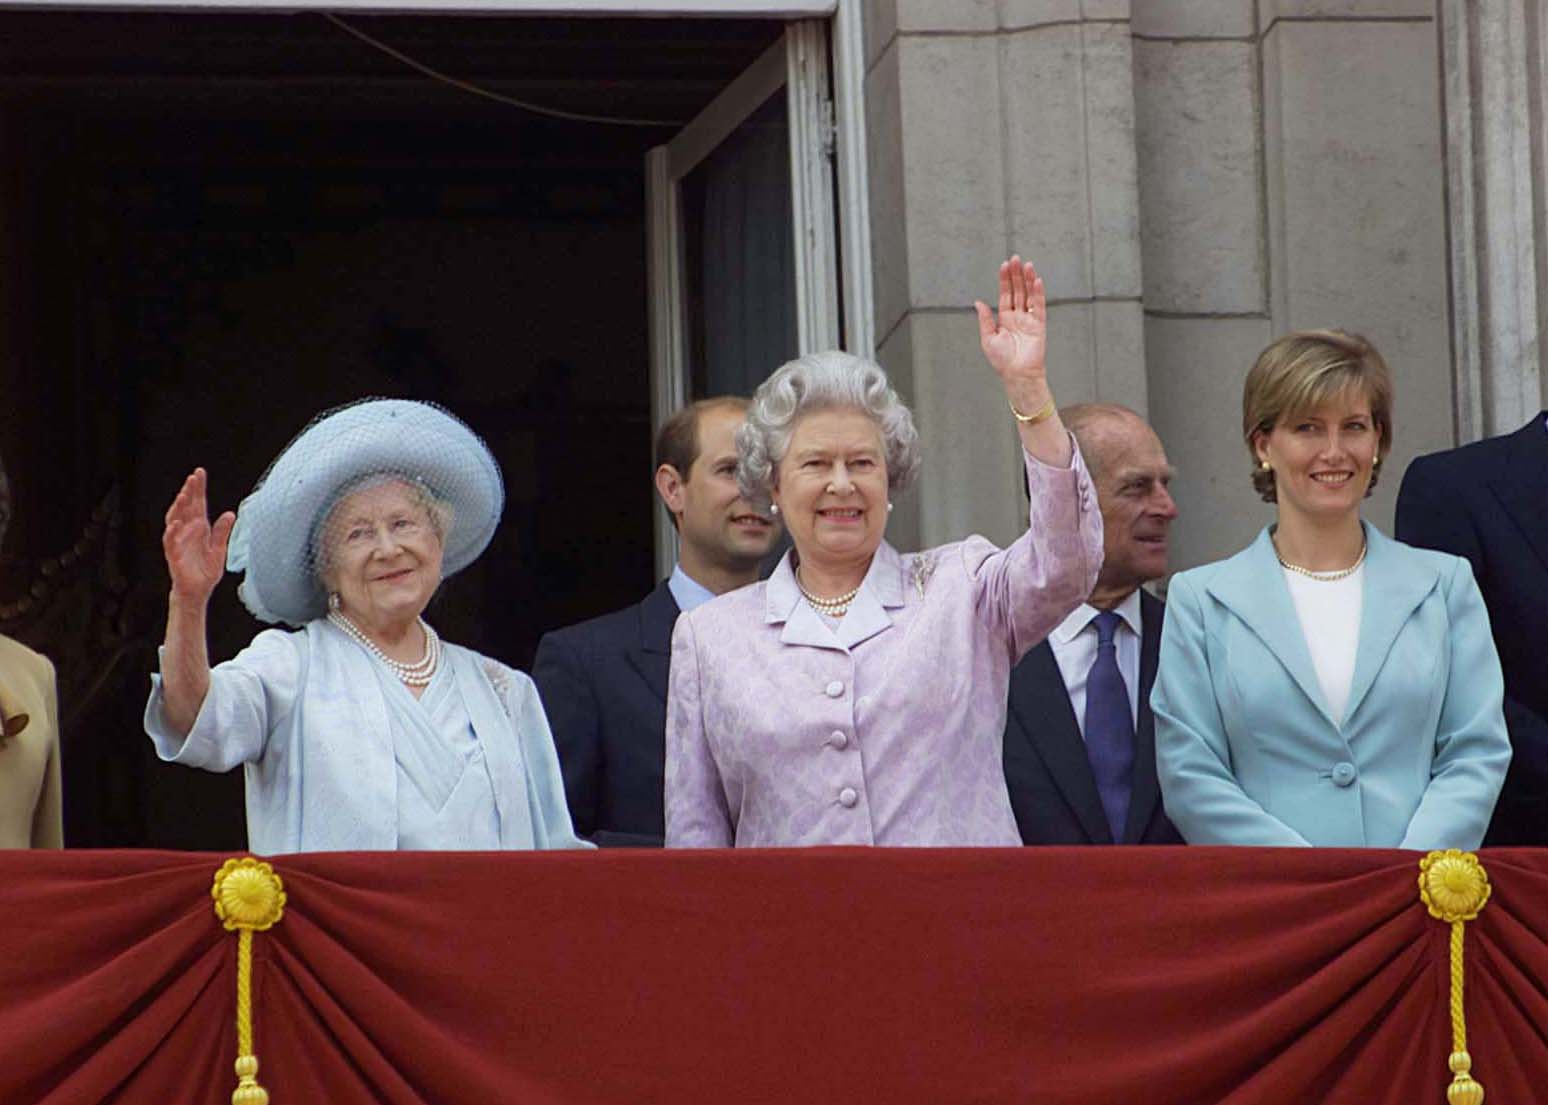 Großbritanniens Königinmutter (L, blauer Hut und blaues Kleid) feiert ihren 100. Geburtstag mit ihrer Tochter Königin Elizabeth II (C, in lavendelfarben), Prinz Edward (C, verdeckt) mit Ehefrau Sophie, Gräfin von Wessex (R) in Grün und Prinz Philip (2R) im Buckingham Palace. 4. August 2000 | Quelle: Getty Images 